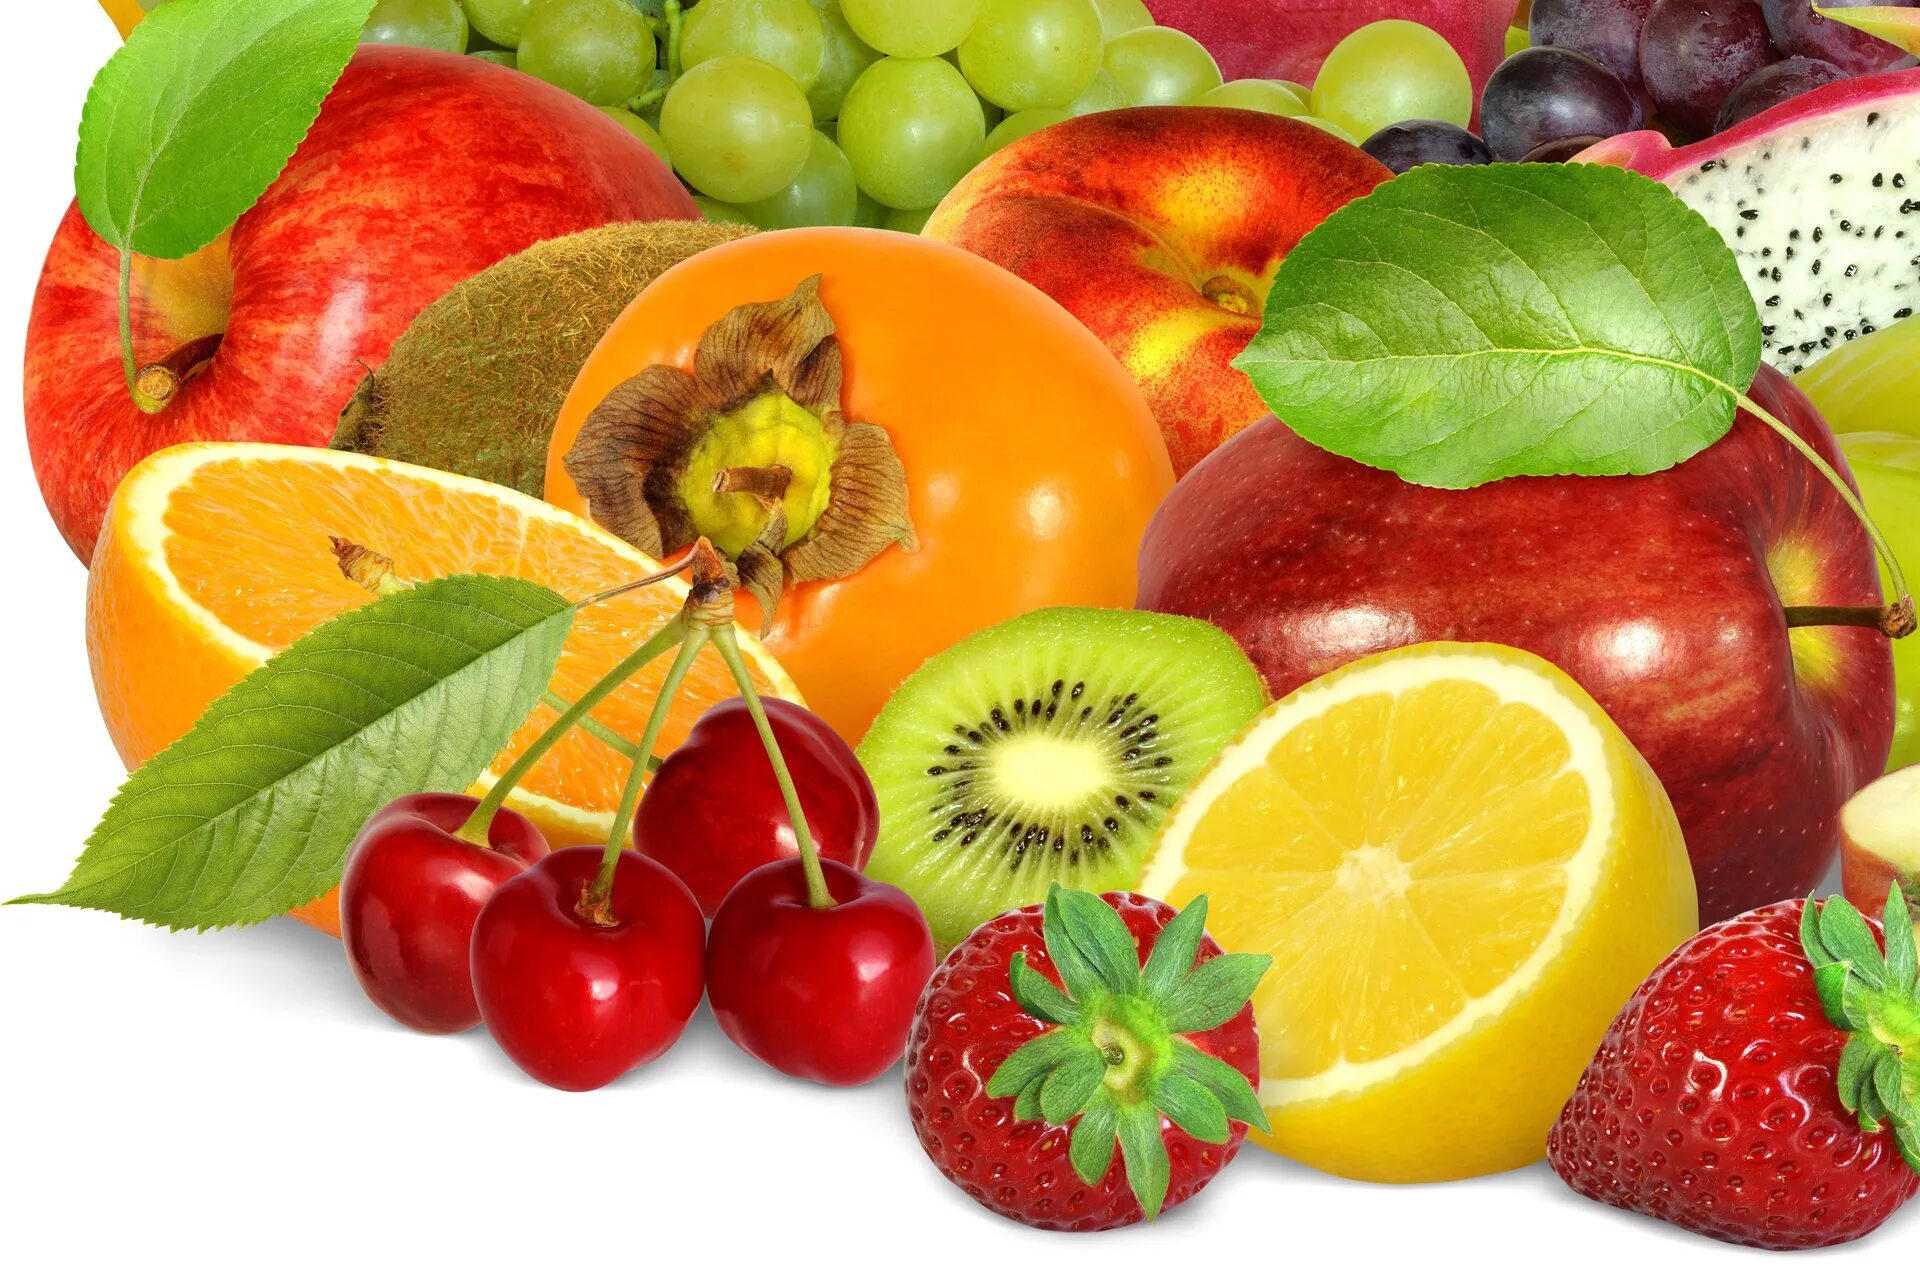 Обои фрукты. Фрукты и ягоды. Красивые яркие фрукты. Сочные фрукты и овощи. Овощи, фрукты, ягоды.